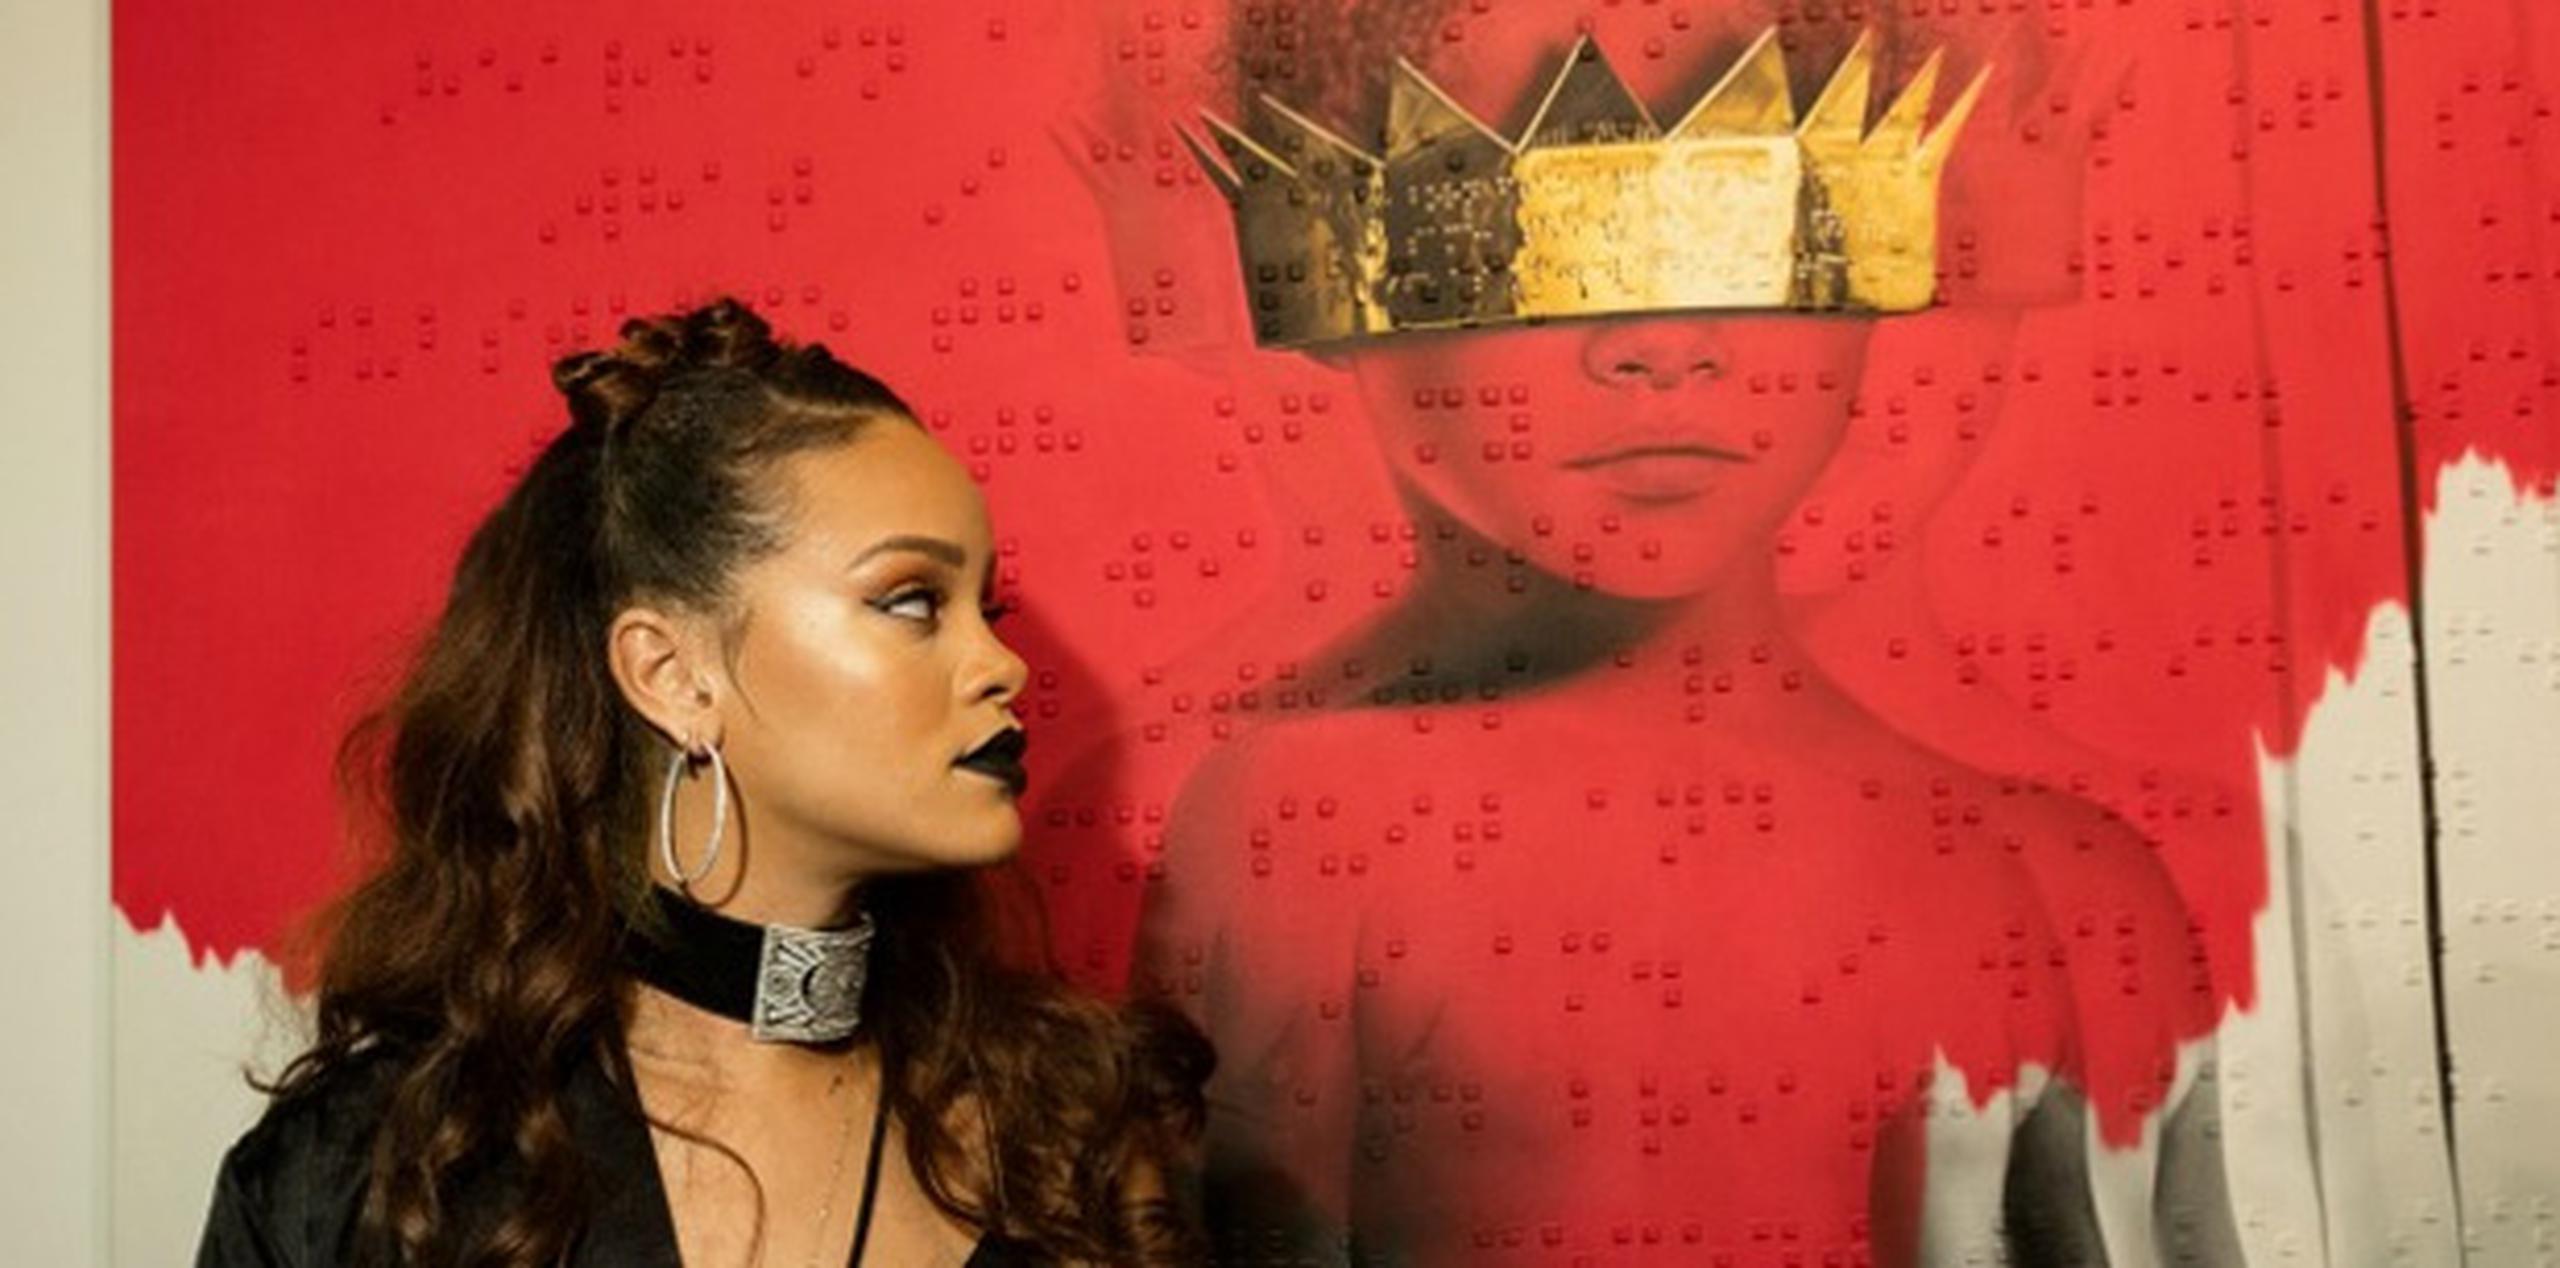 La página oficial de Rihanna publicó ocho vídeos cortos como contenido adicional de "ANTI".